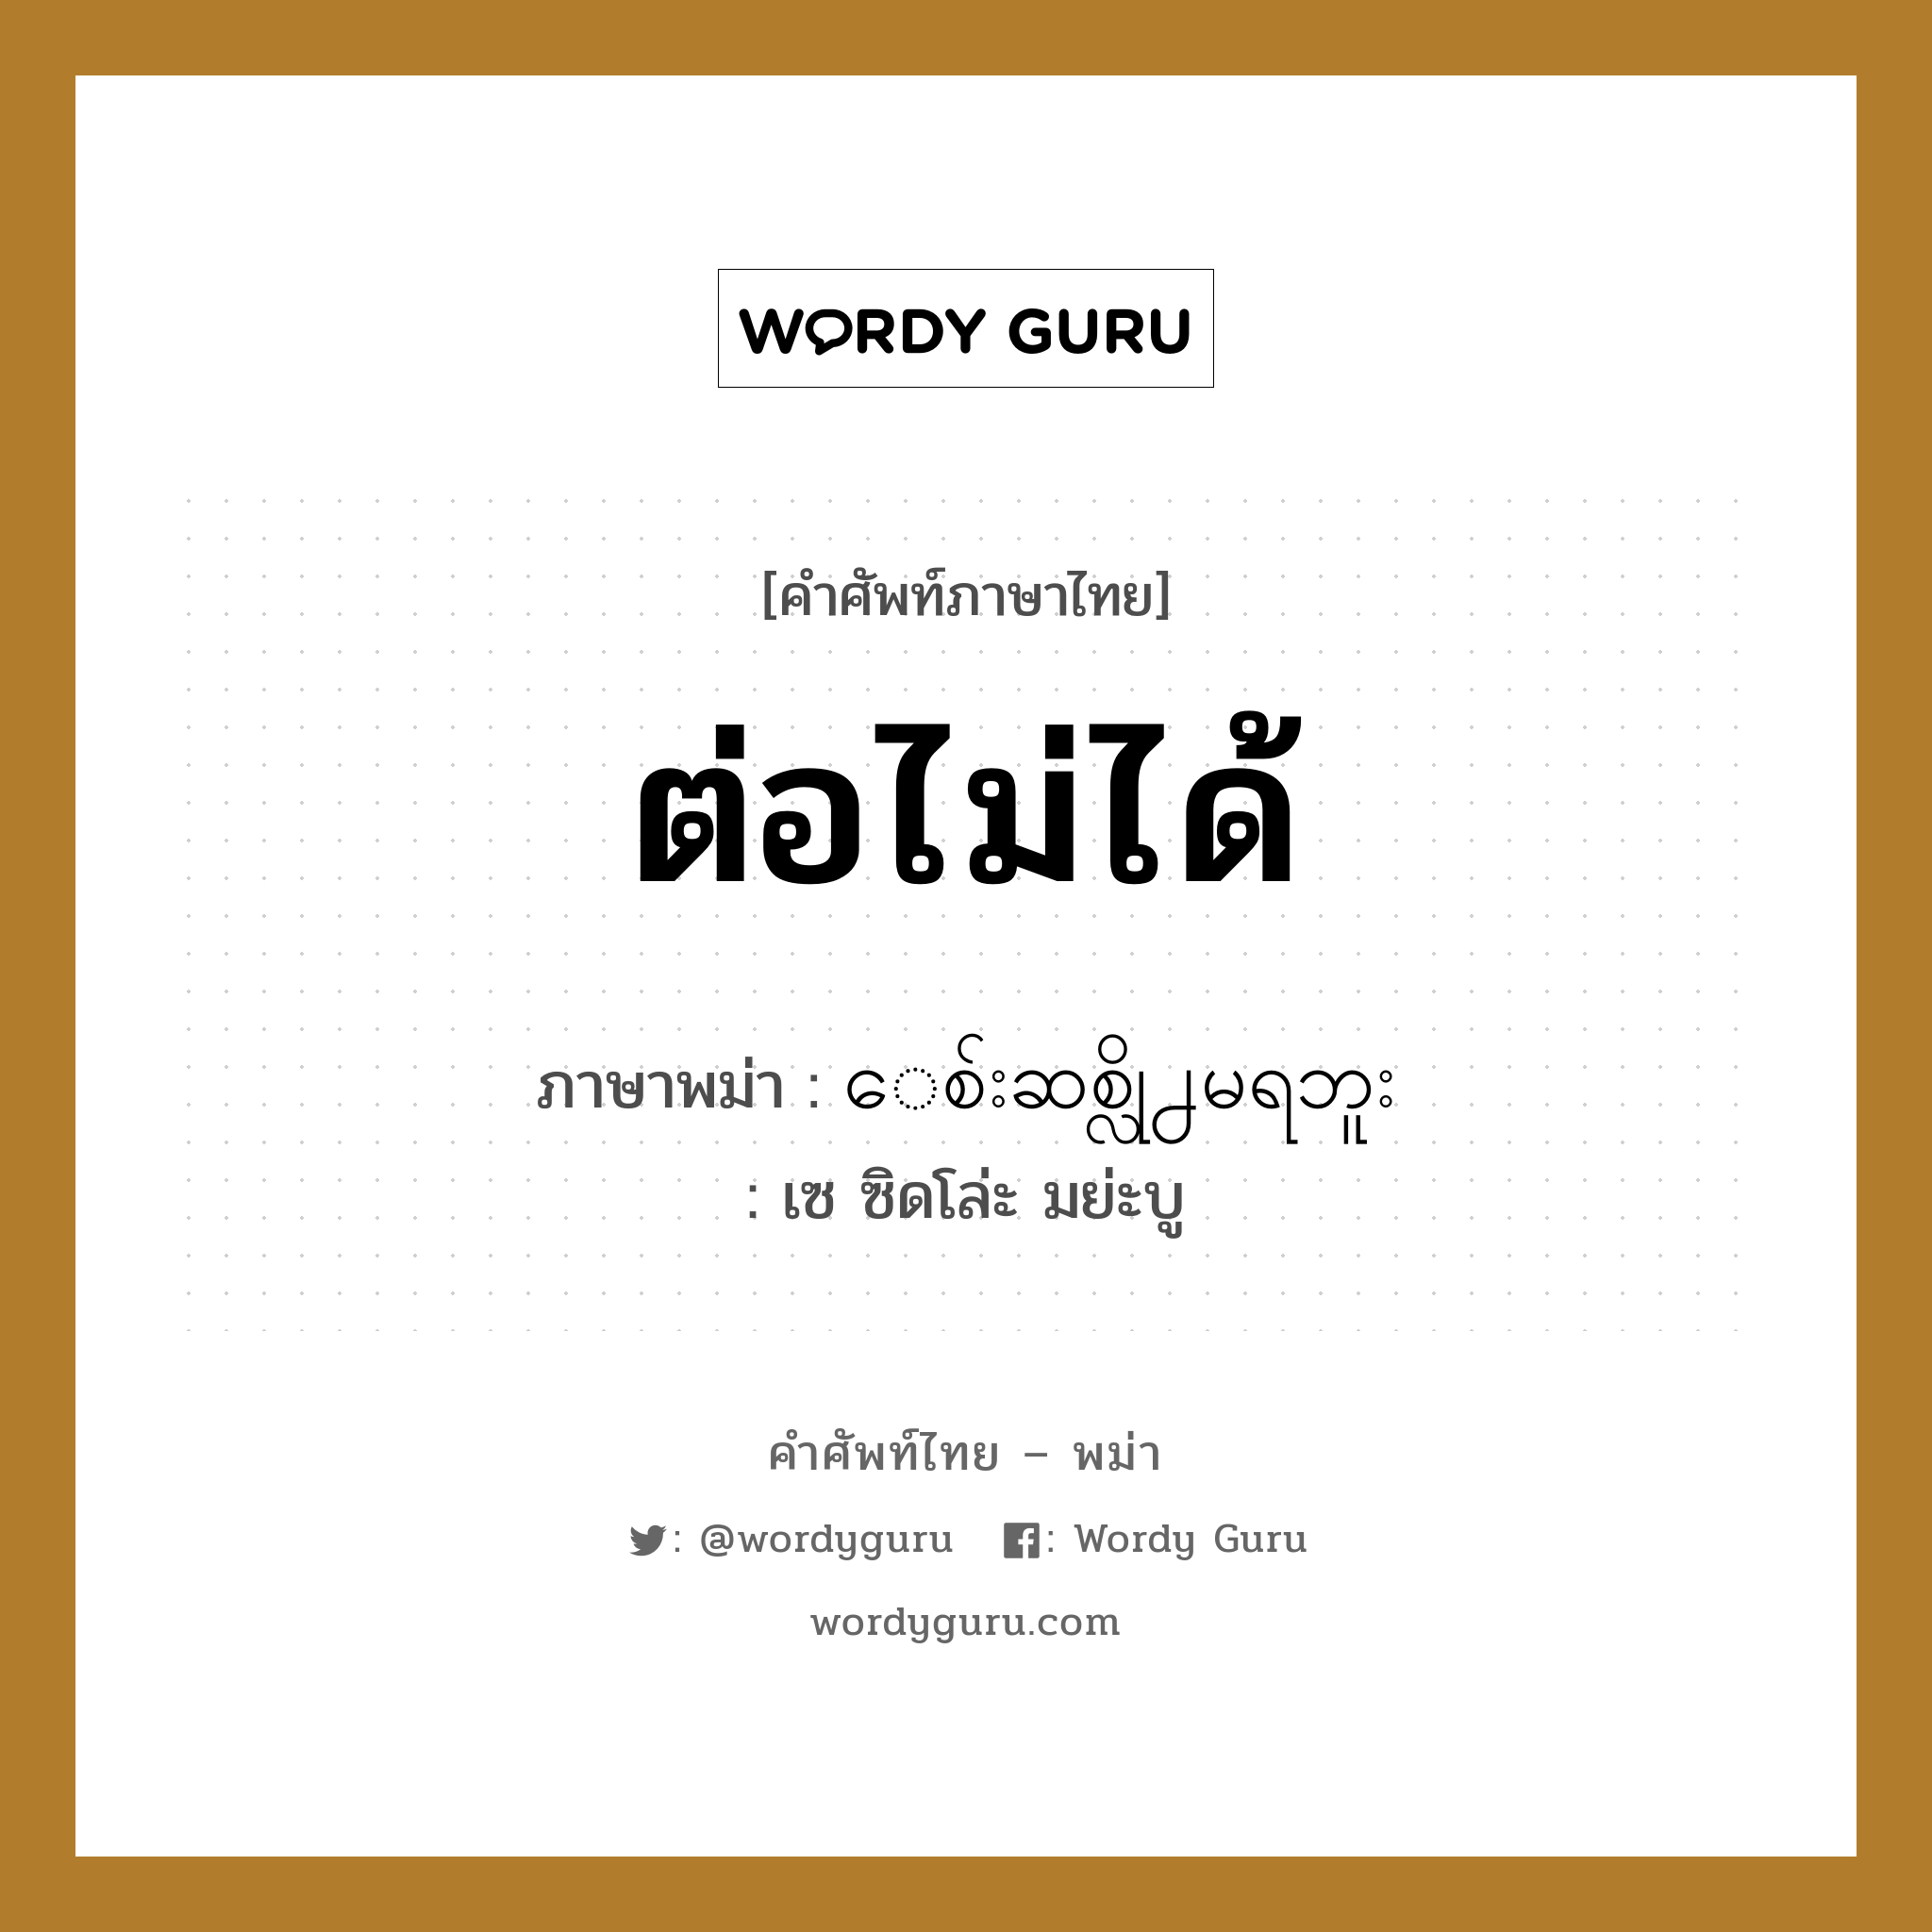 ต่อไม่ได้ ภาษาพม่าคืออะไร, คำศัพท์ภาษาไทย - พม่า ต่อไม่ได้ ภาษาพม่า ေစ်းဆစ္လို႕မရဘူး หมวด บทสนทนาการซื้อขาย เซ ซิดโล่ะ มย่ะบู หมวด บทสนทนาการซื้อขาย